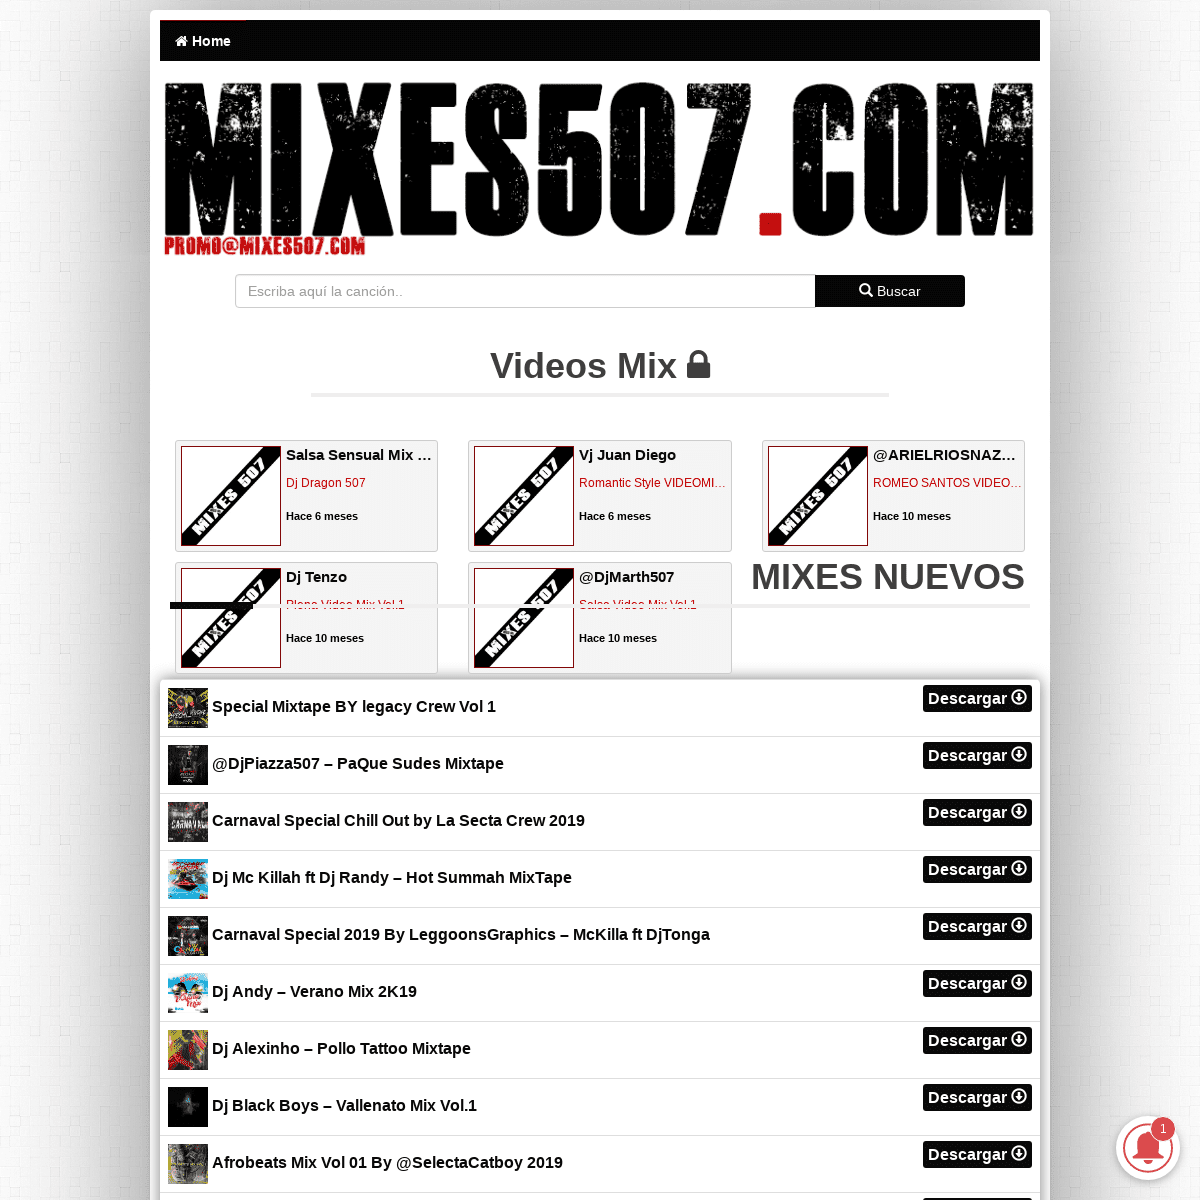 Mixes507.com